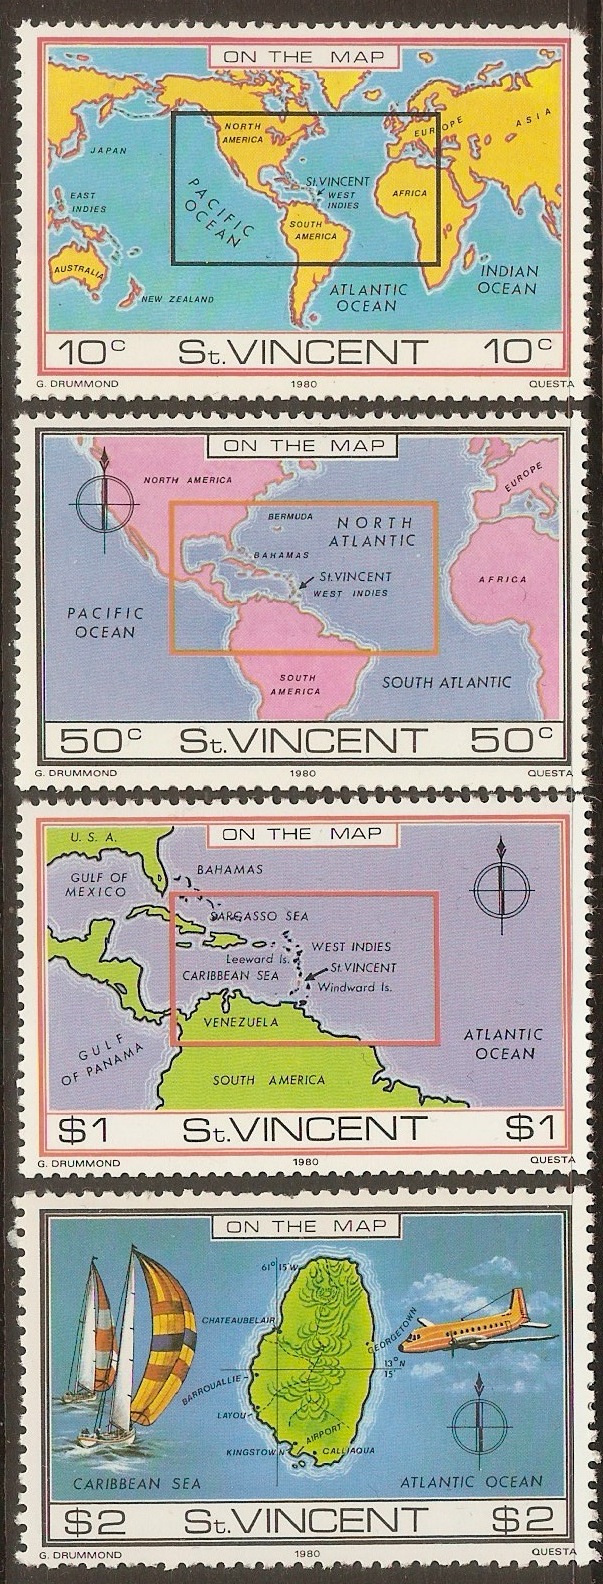 St Vincent 1980 "On the Map" set. SG651-SG654.